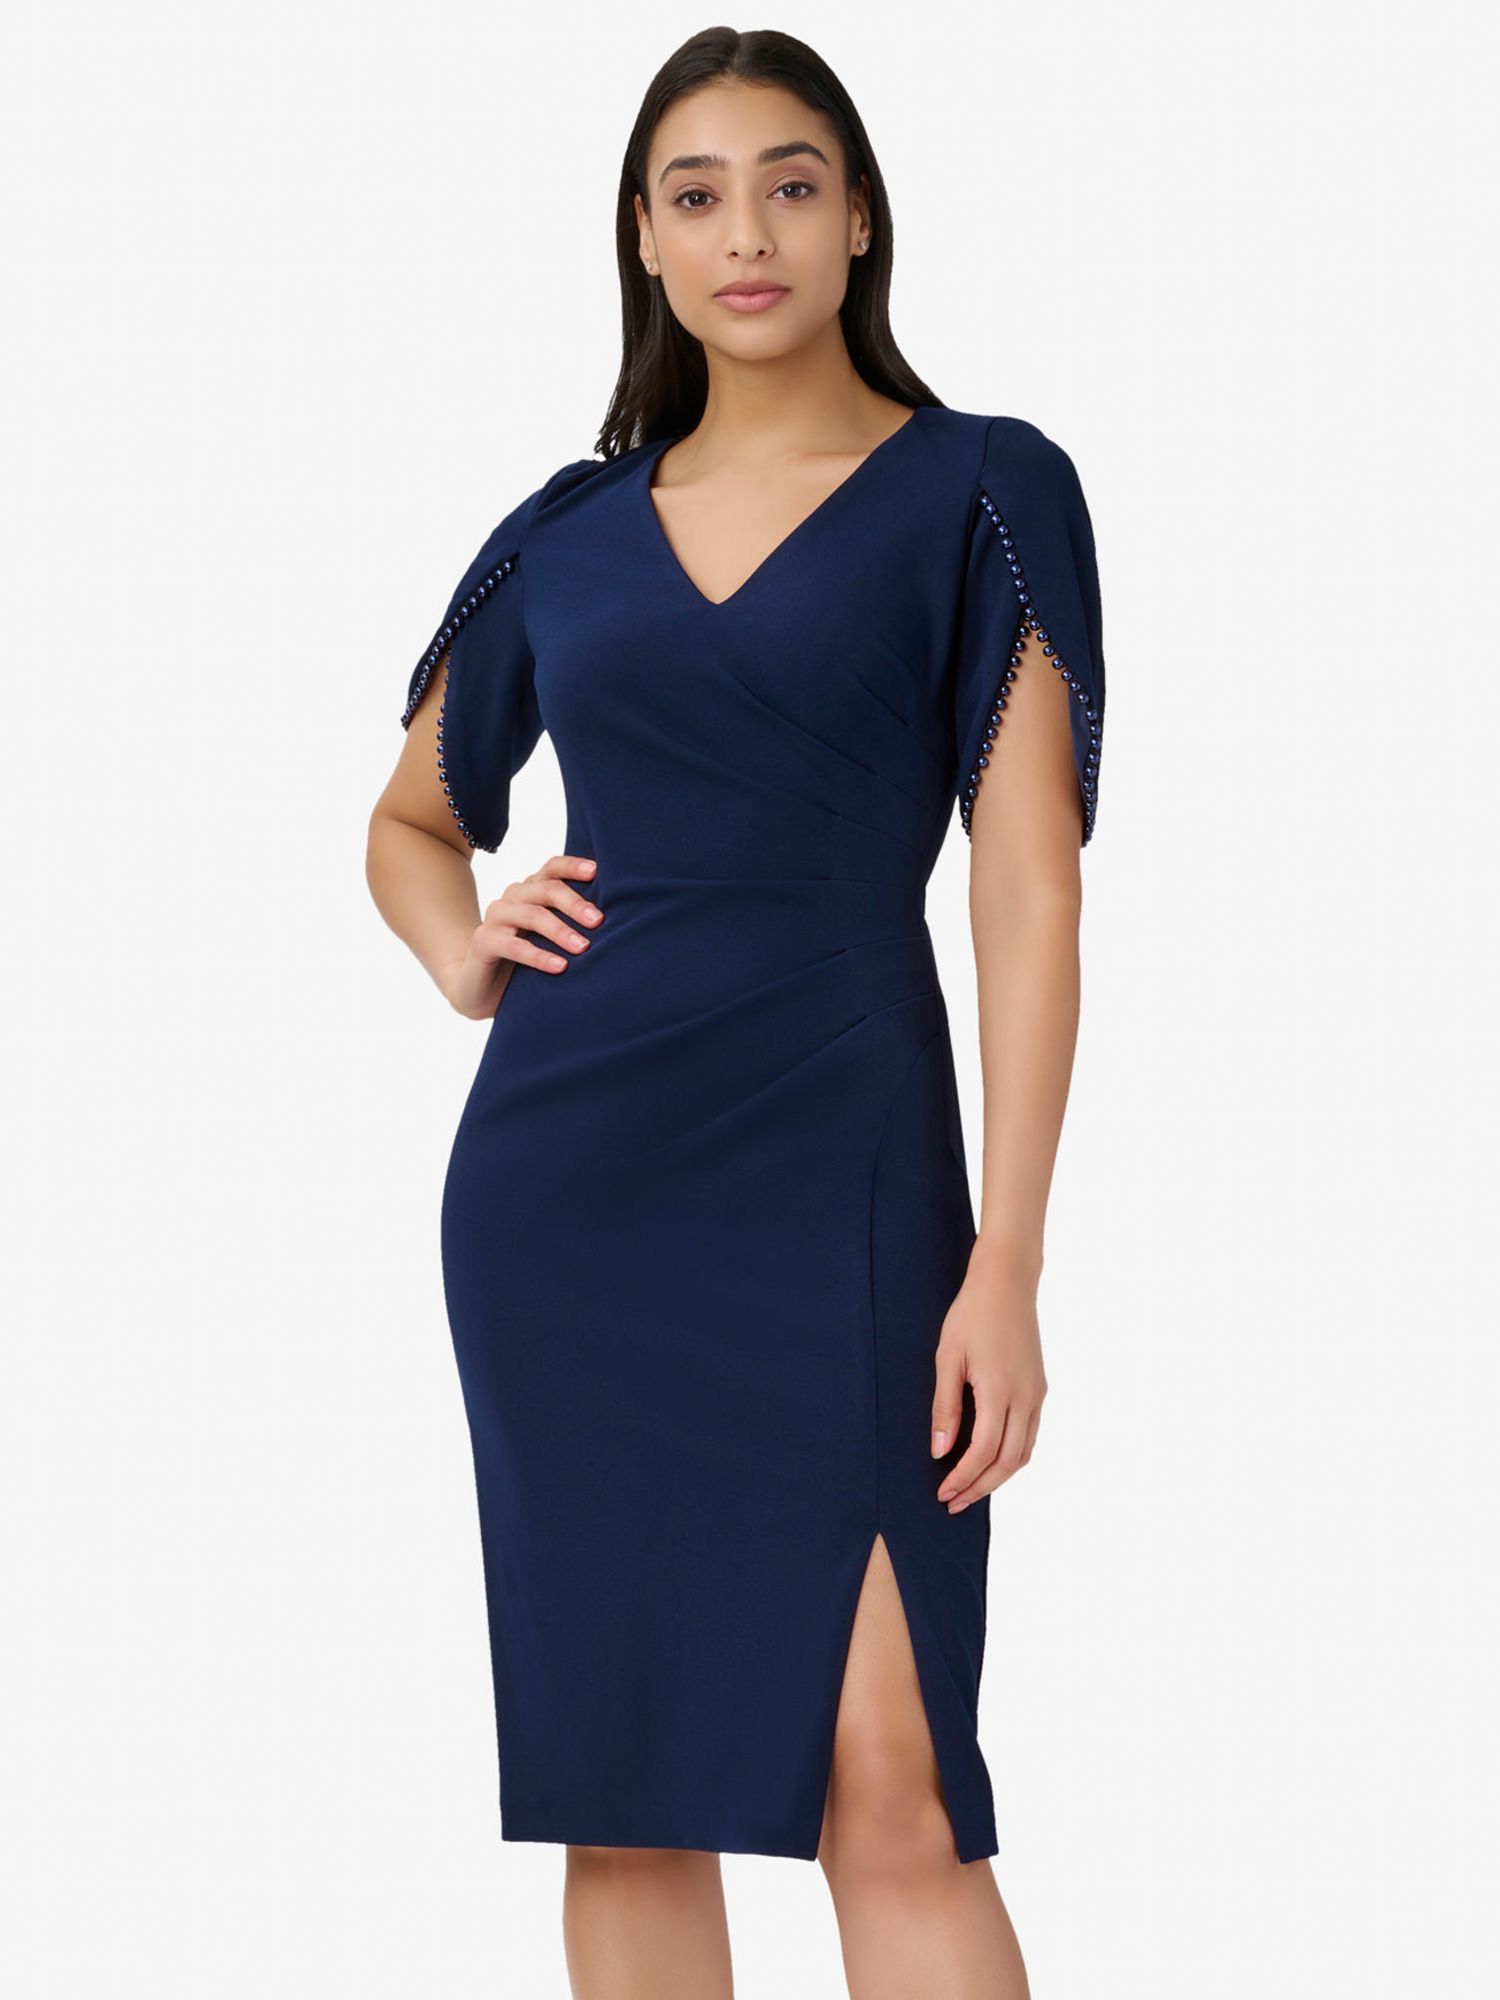 цена Вязаное платье длиной до колена с жемчужной отделкой из крепа Adrianna Papell, темно-синий сатин